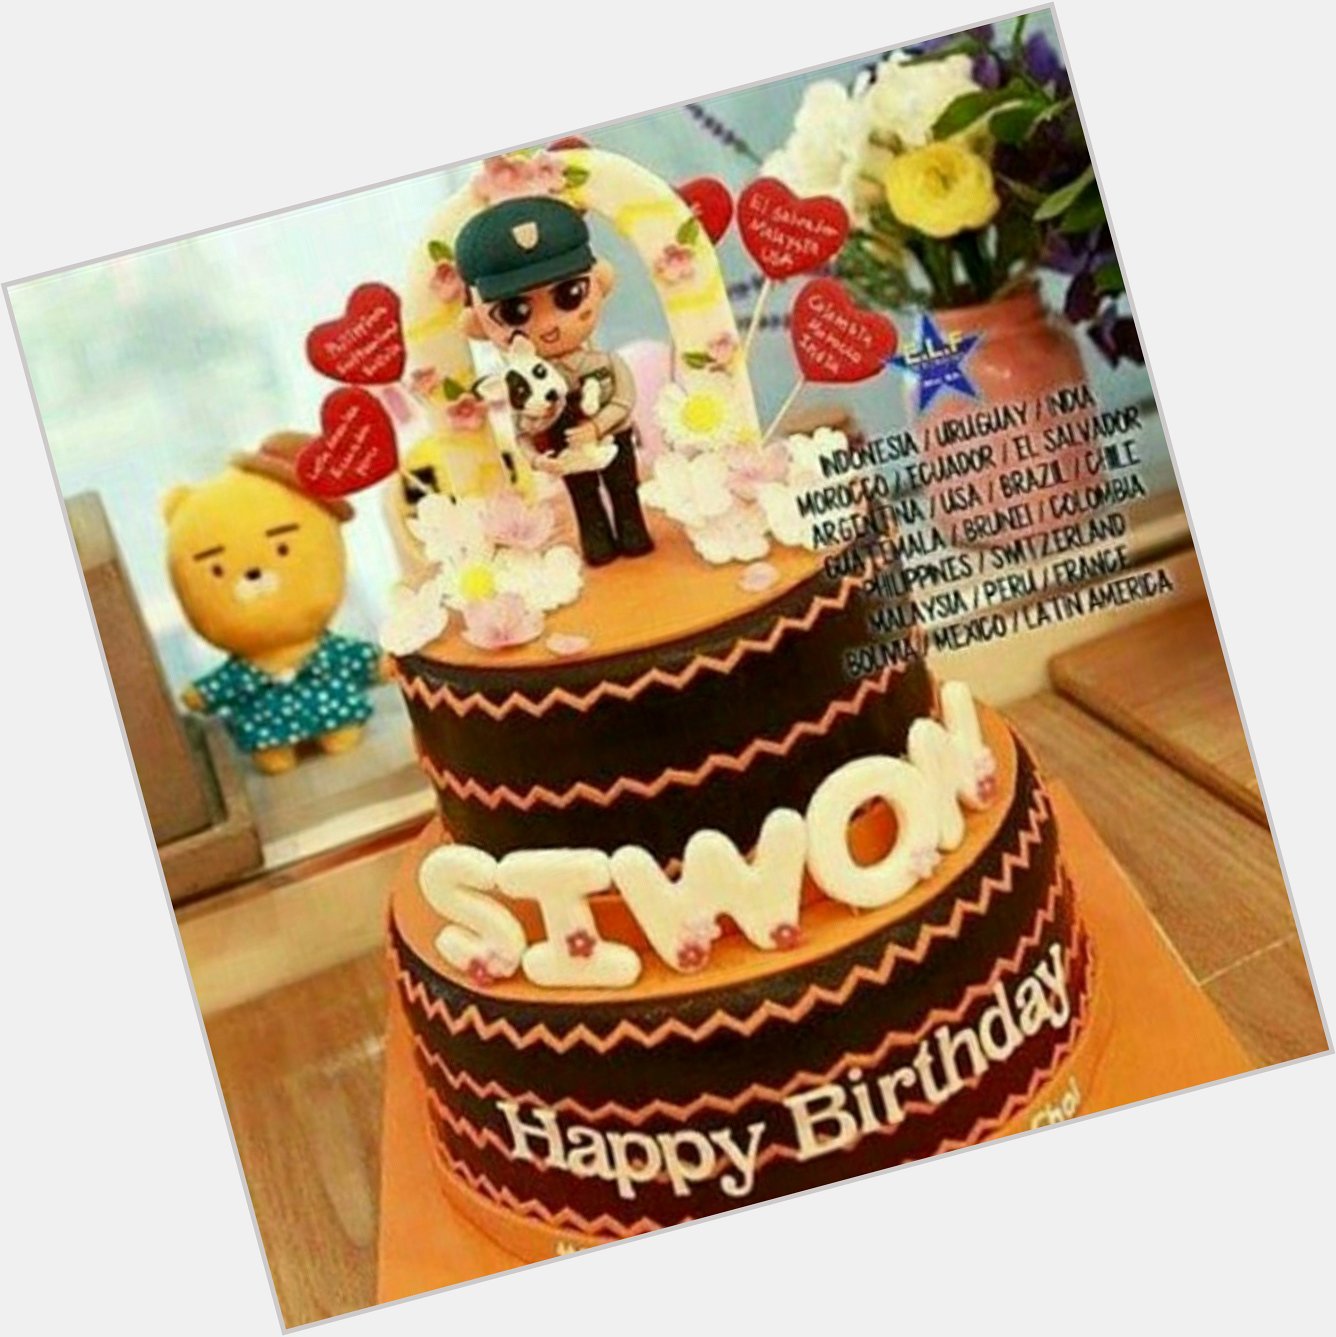 Happy birthday Choi Siwon 